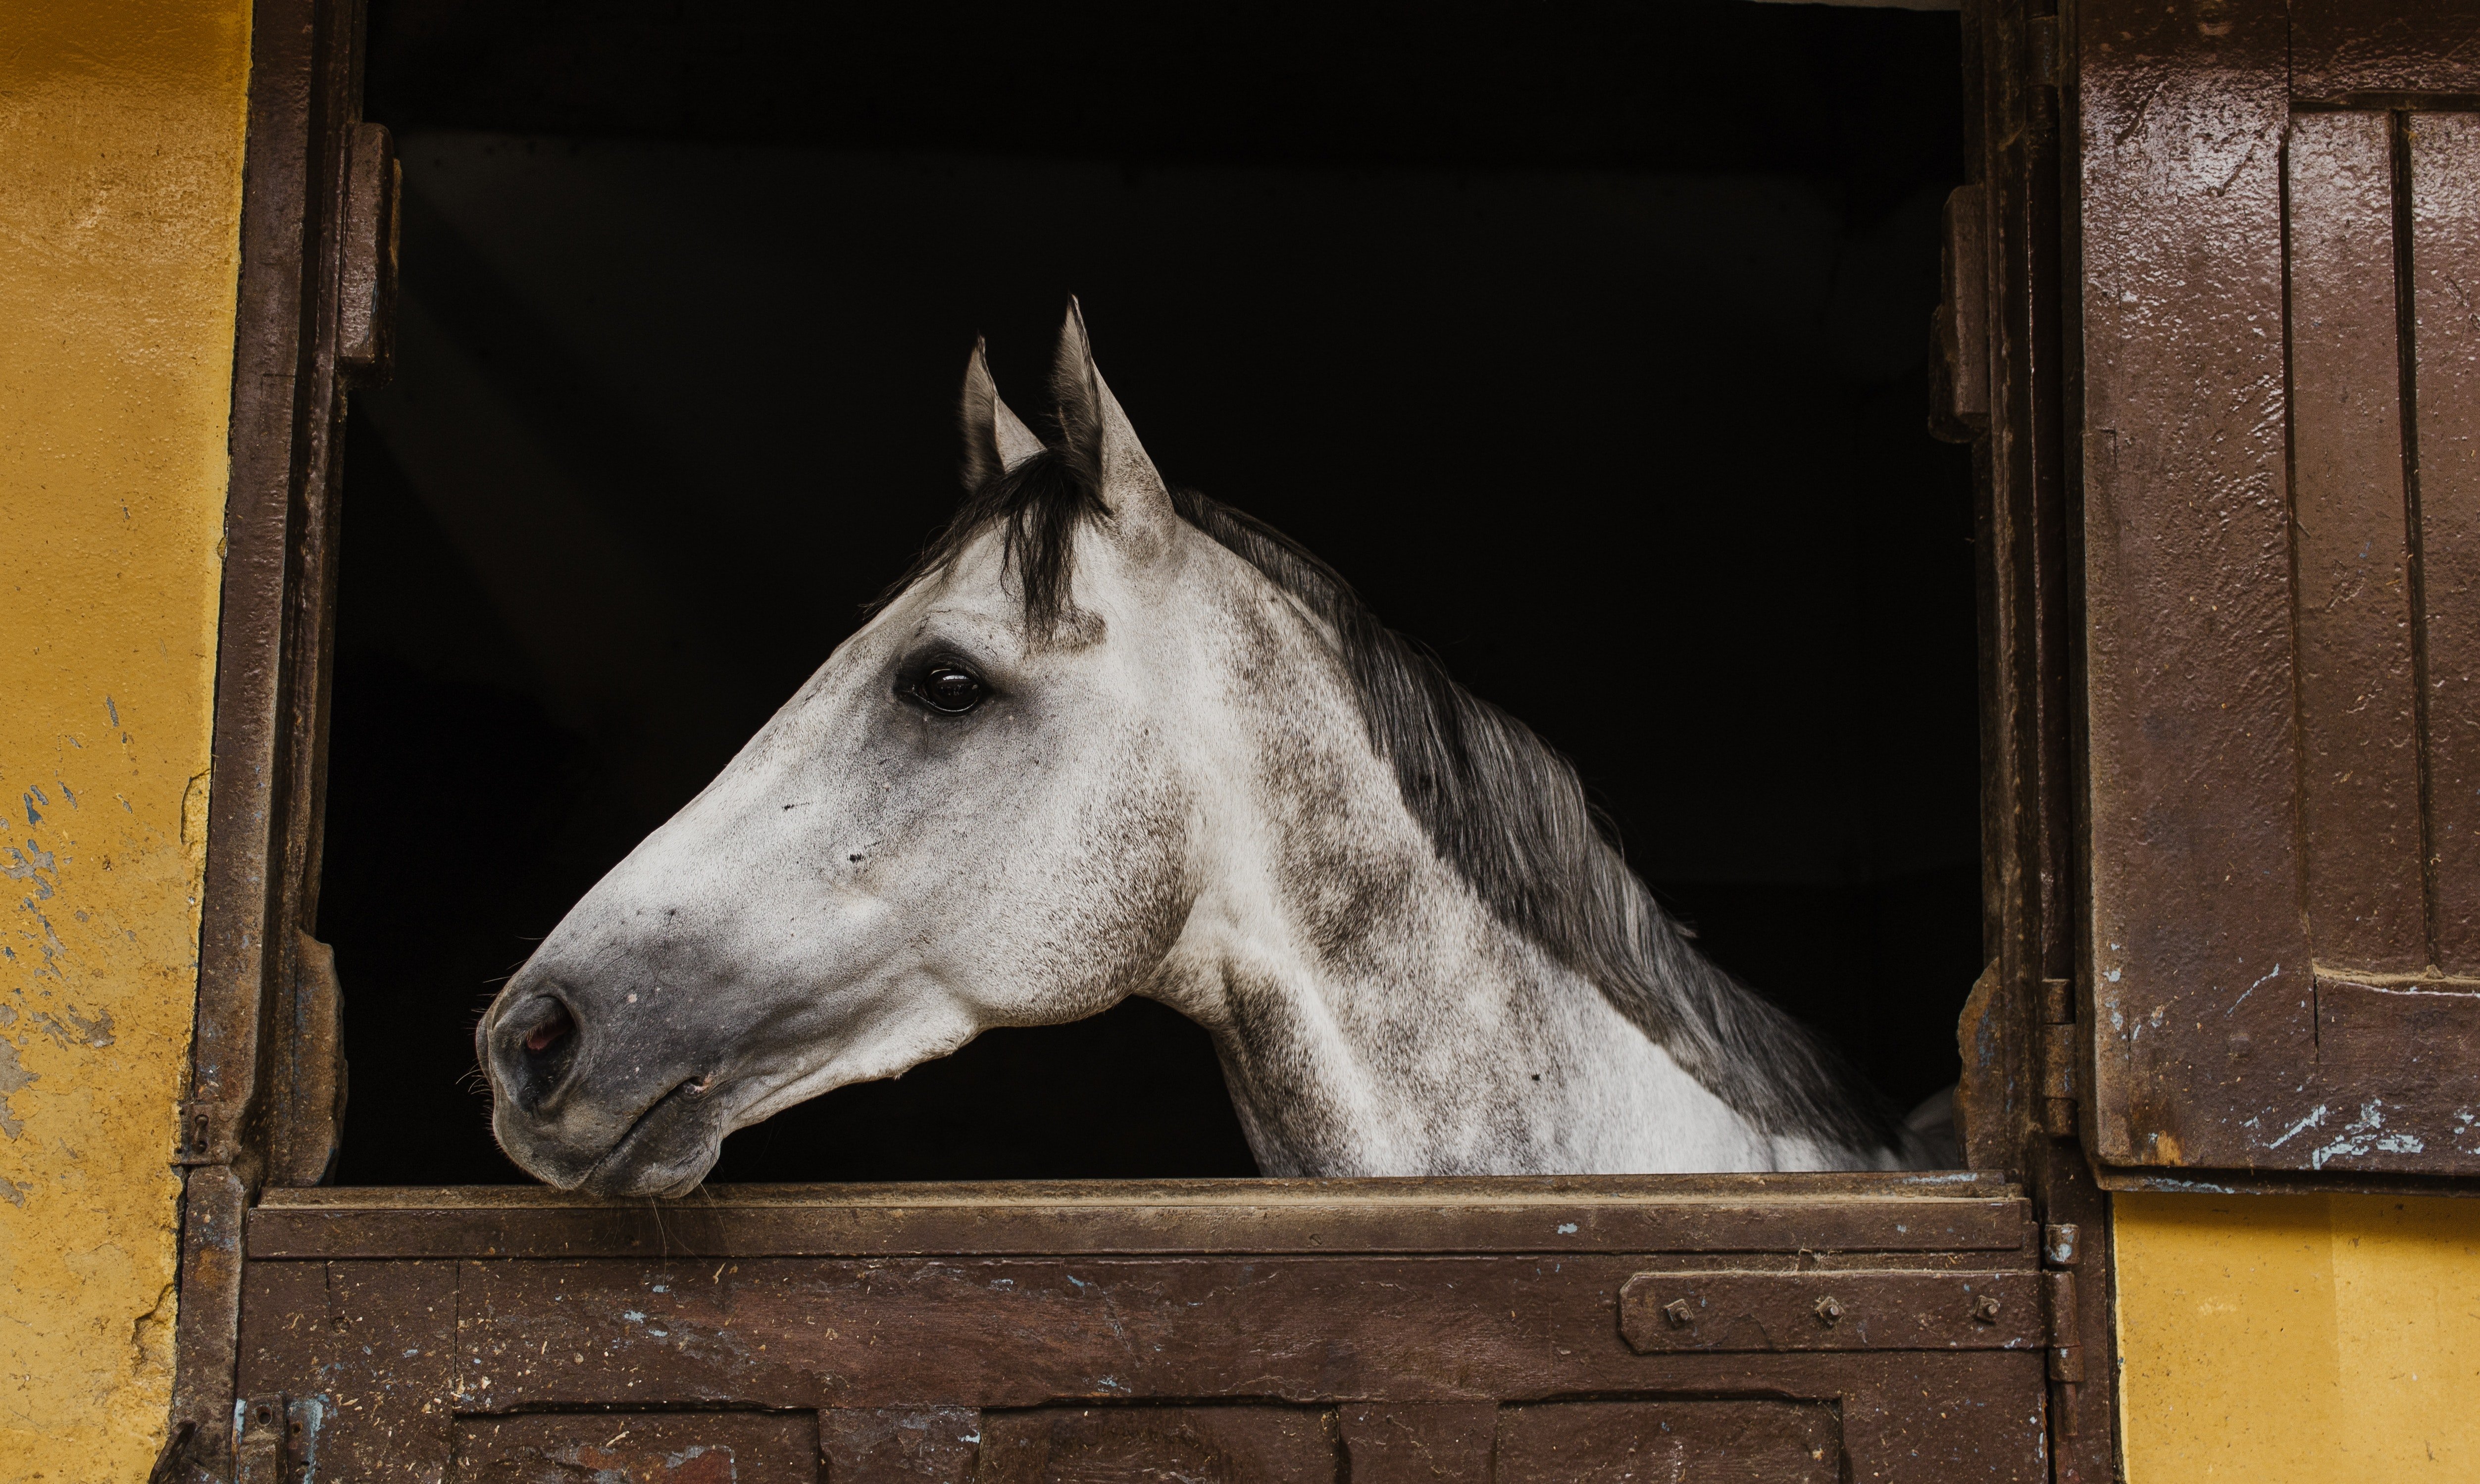 Kostenbeispiele für Tierarztkosten beim Pferd

Die Kosten für tierärztliche Behandlungen bei Pferden können stark variieren, je nach Art der Behandlung, dem Schweregrad der Erkrankung oder Verletzung, dem Standort und den individuellen Gebühren des Tierarztes. Hier sind einige Beispiele für mögliche Kosten: